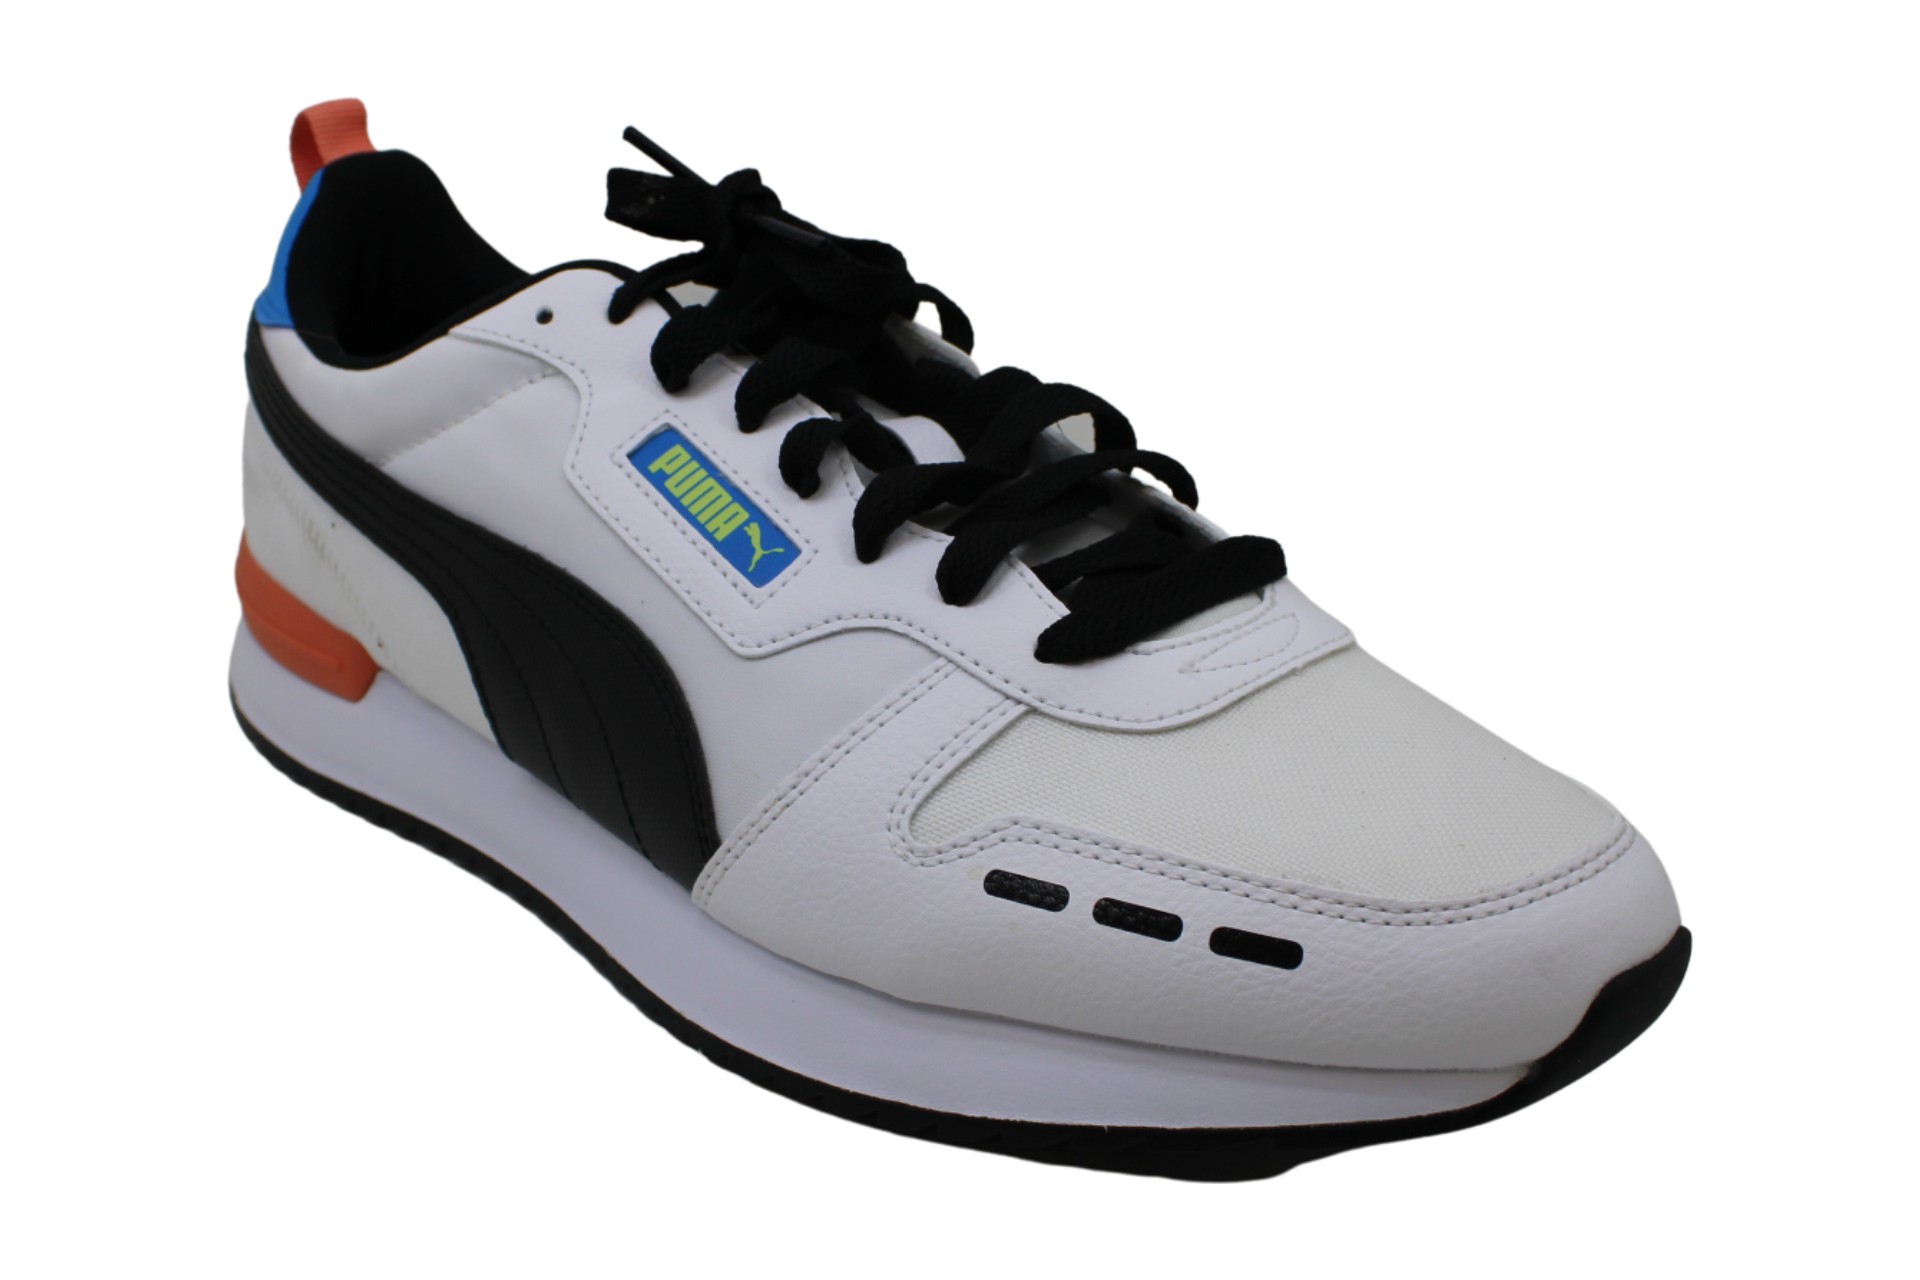 Puma Men's Shoes Fashion Sneakers, MultiColor, Size 13.0